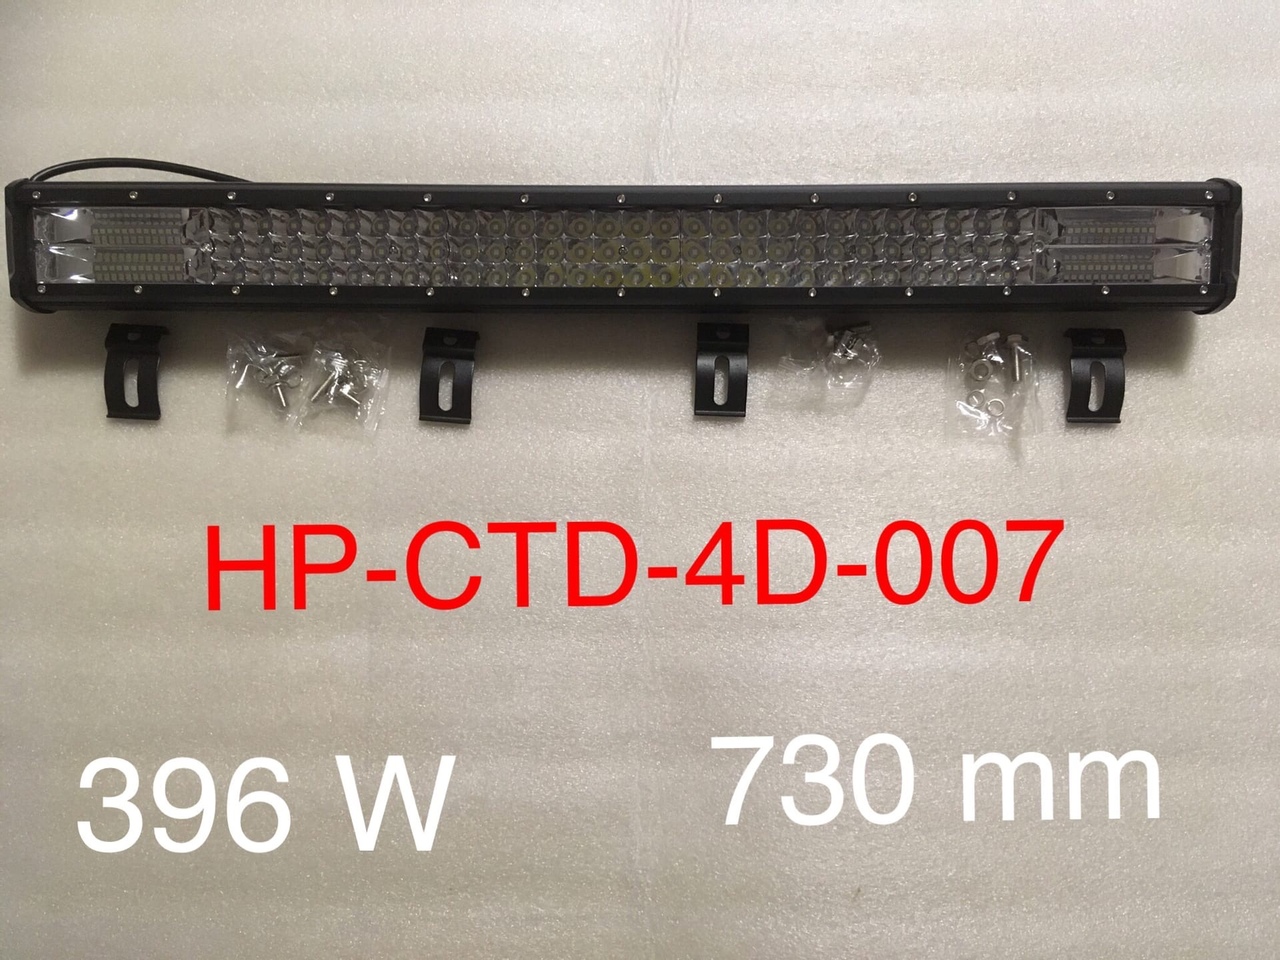 Балка с диодами HP-CTD-4D-007 (396W) 730 мм